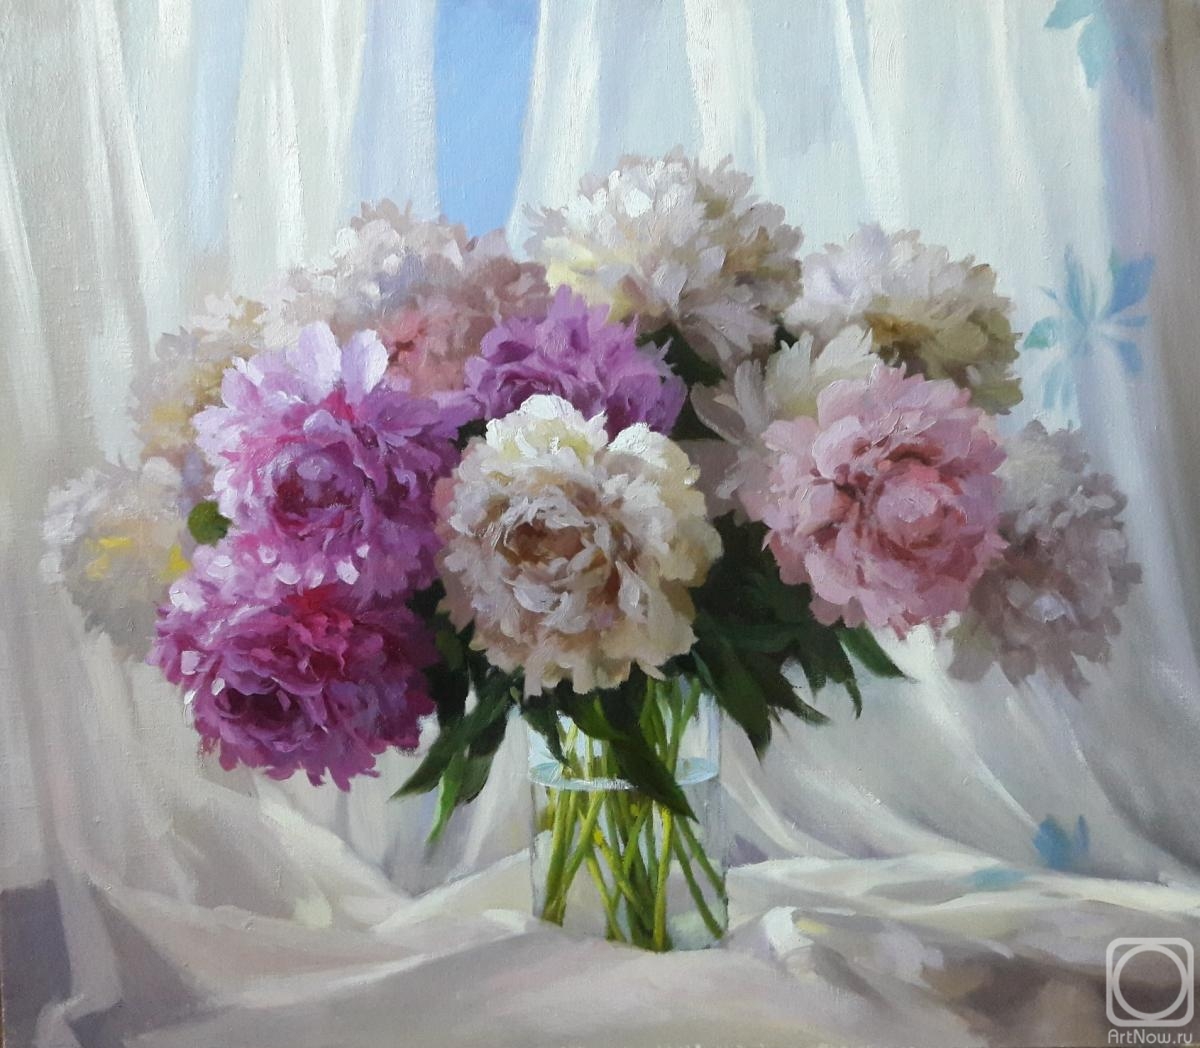 Nikolaev Yury. Delicate bouquet